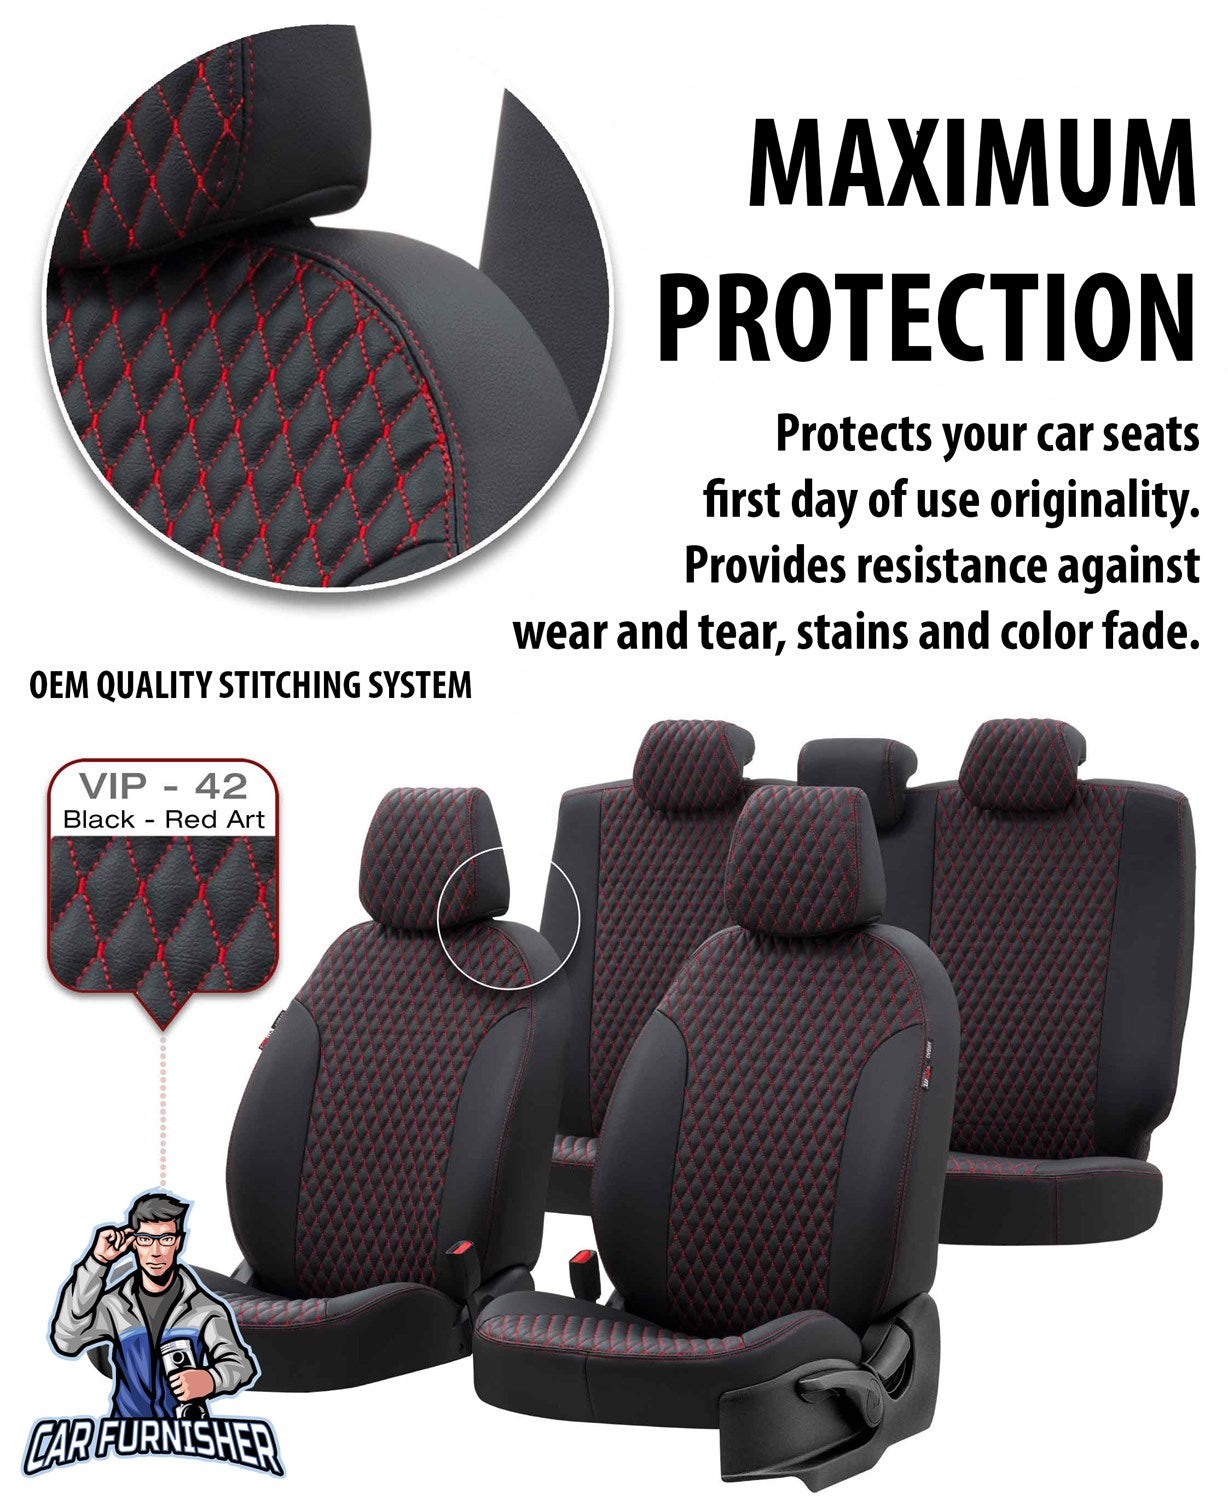 Chevrolet Aveo Car Seat Cover 2003-2023 T200/T250/T300 Amsterdam Black Full Set (5 Seats + Handrest) Full Leather